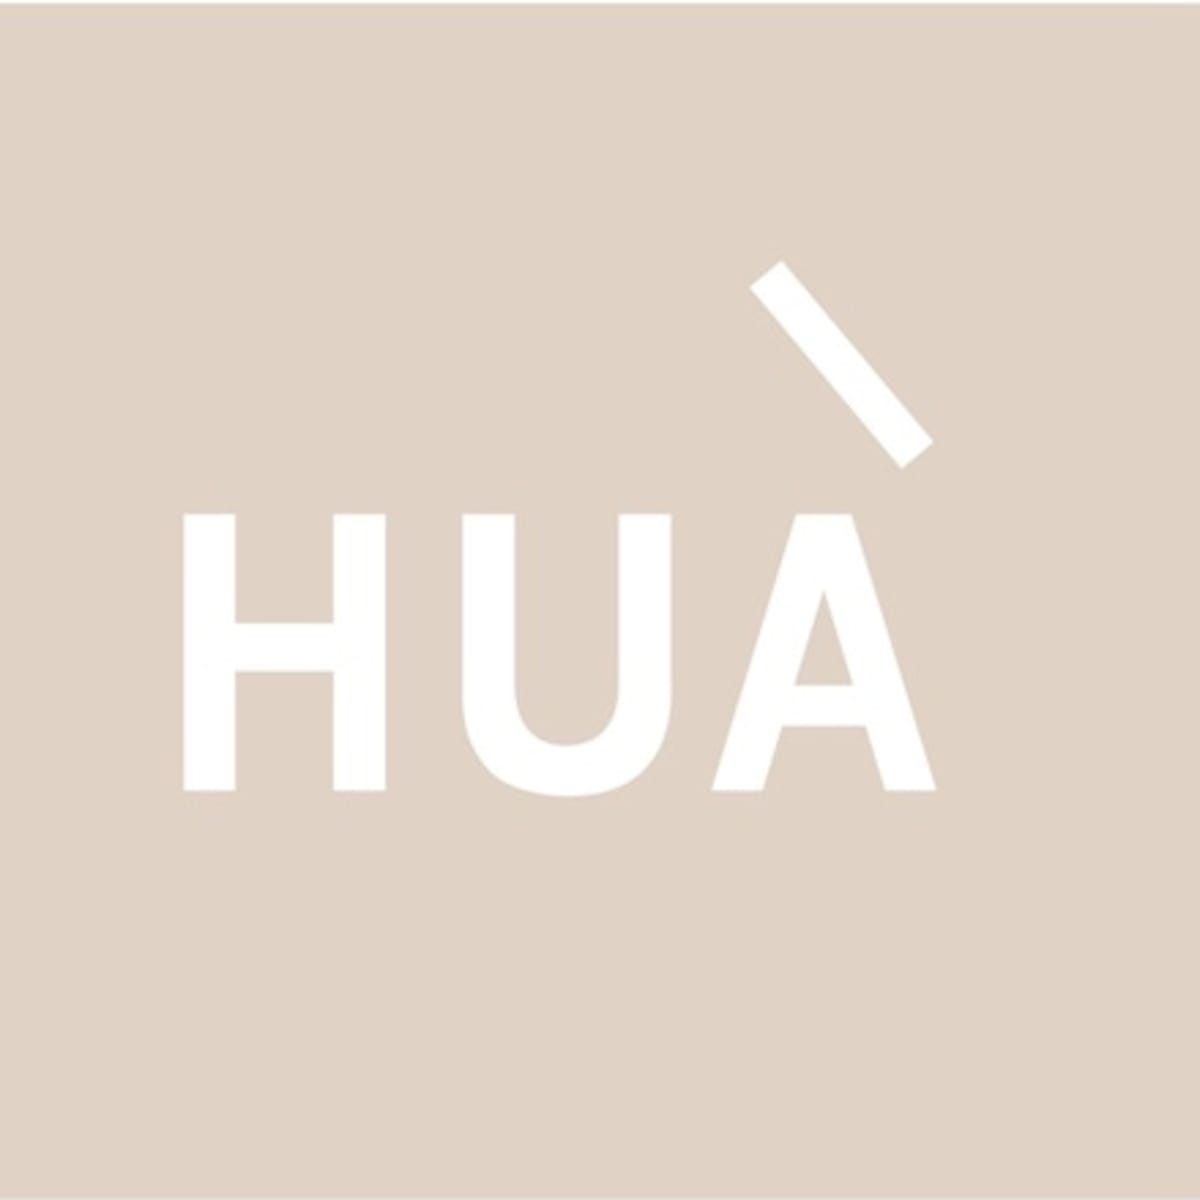 梨花が手がける「メゾン ド リーファー」オリジナルブランドを「LI HUÀ 